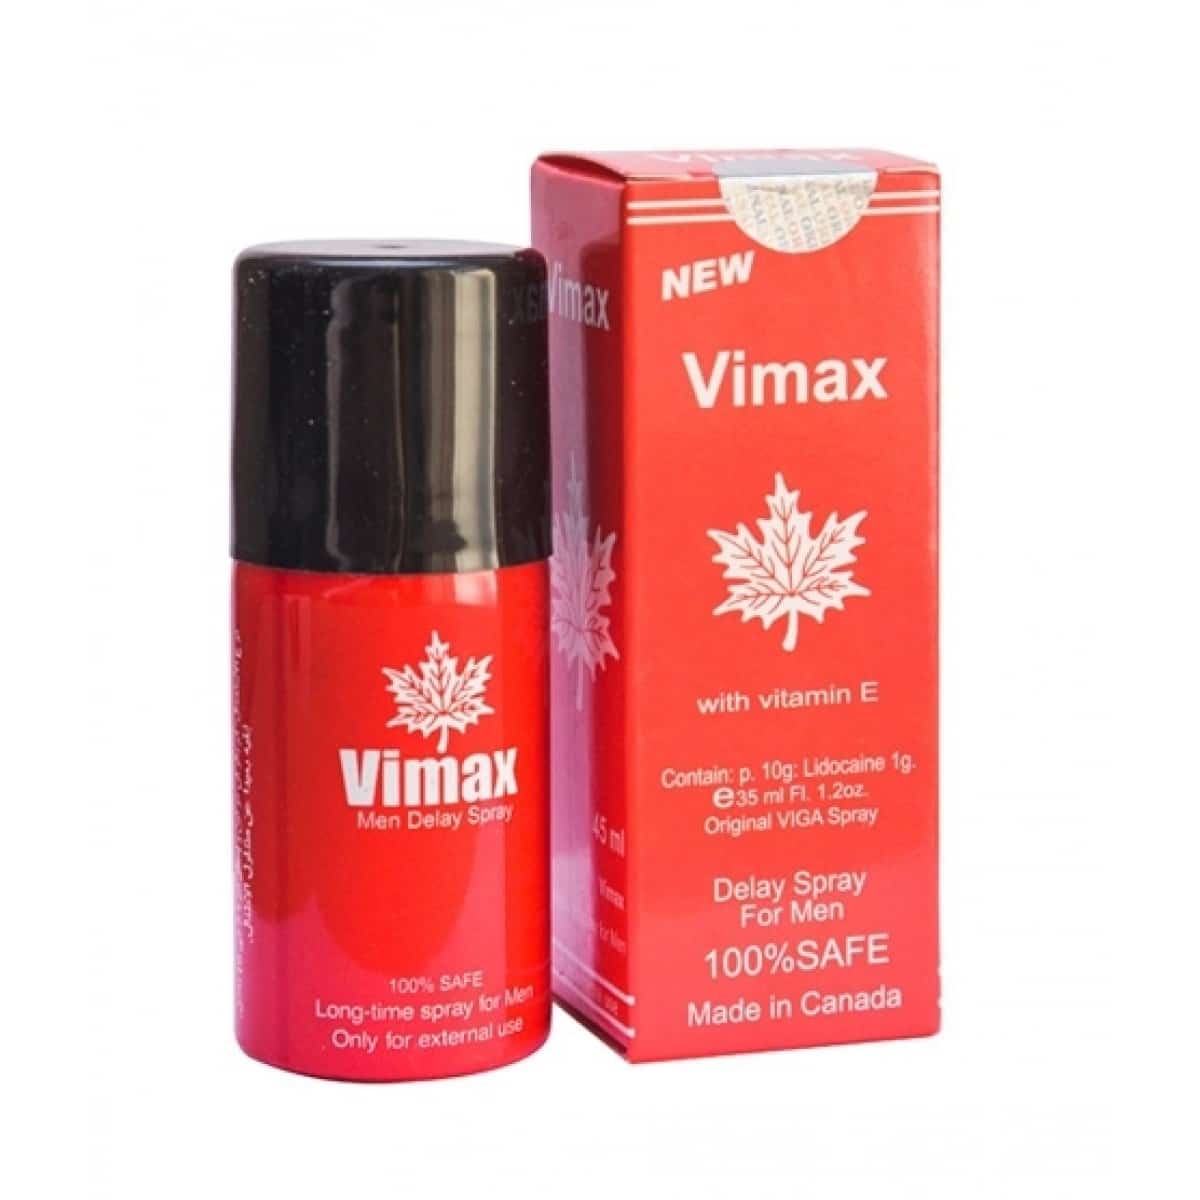 Vimax Delay Spray with Vitamin E